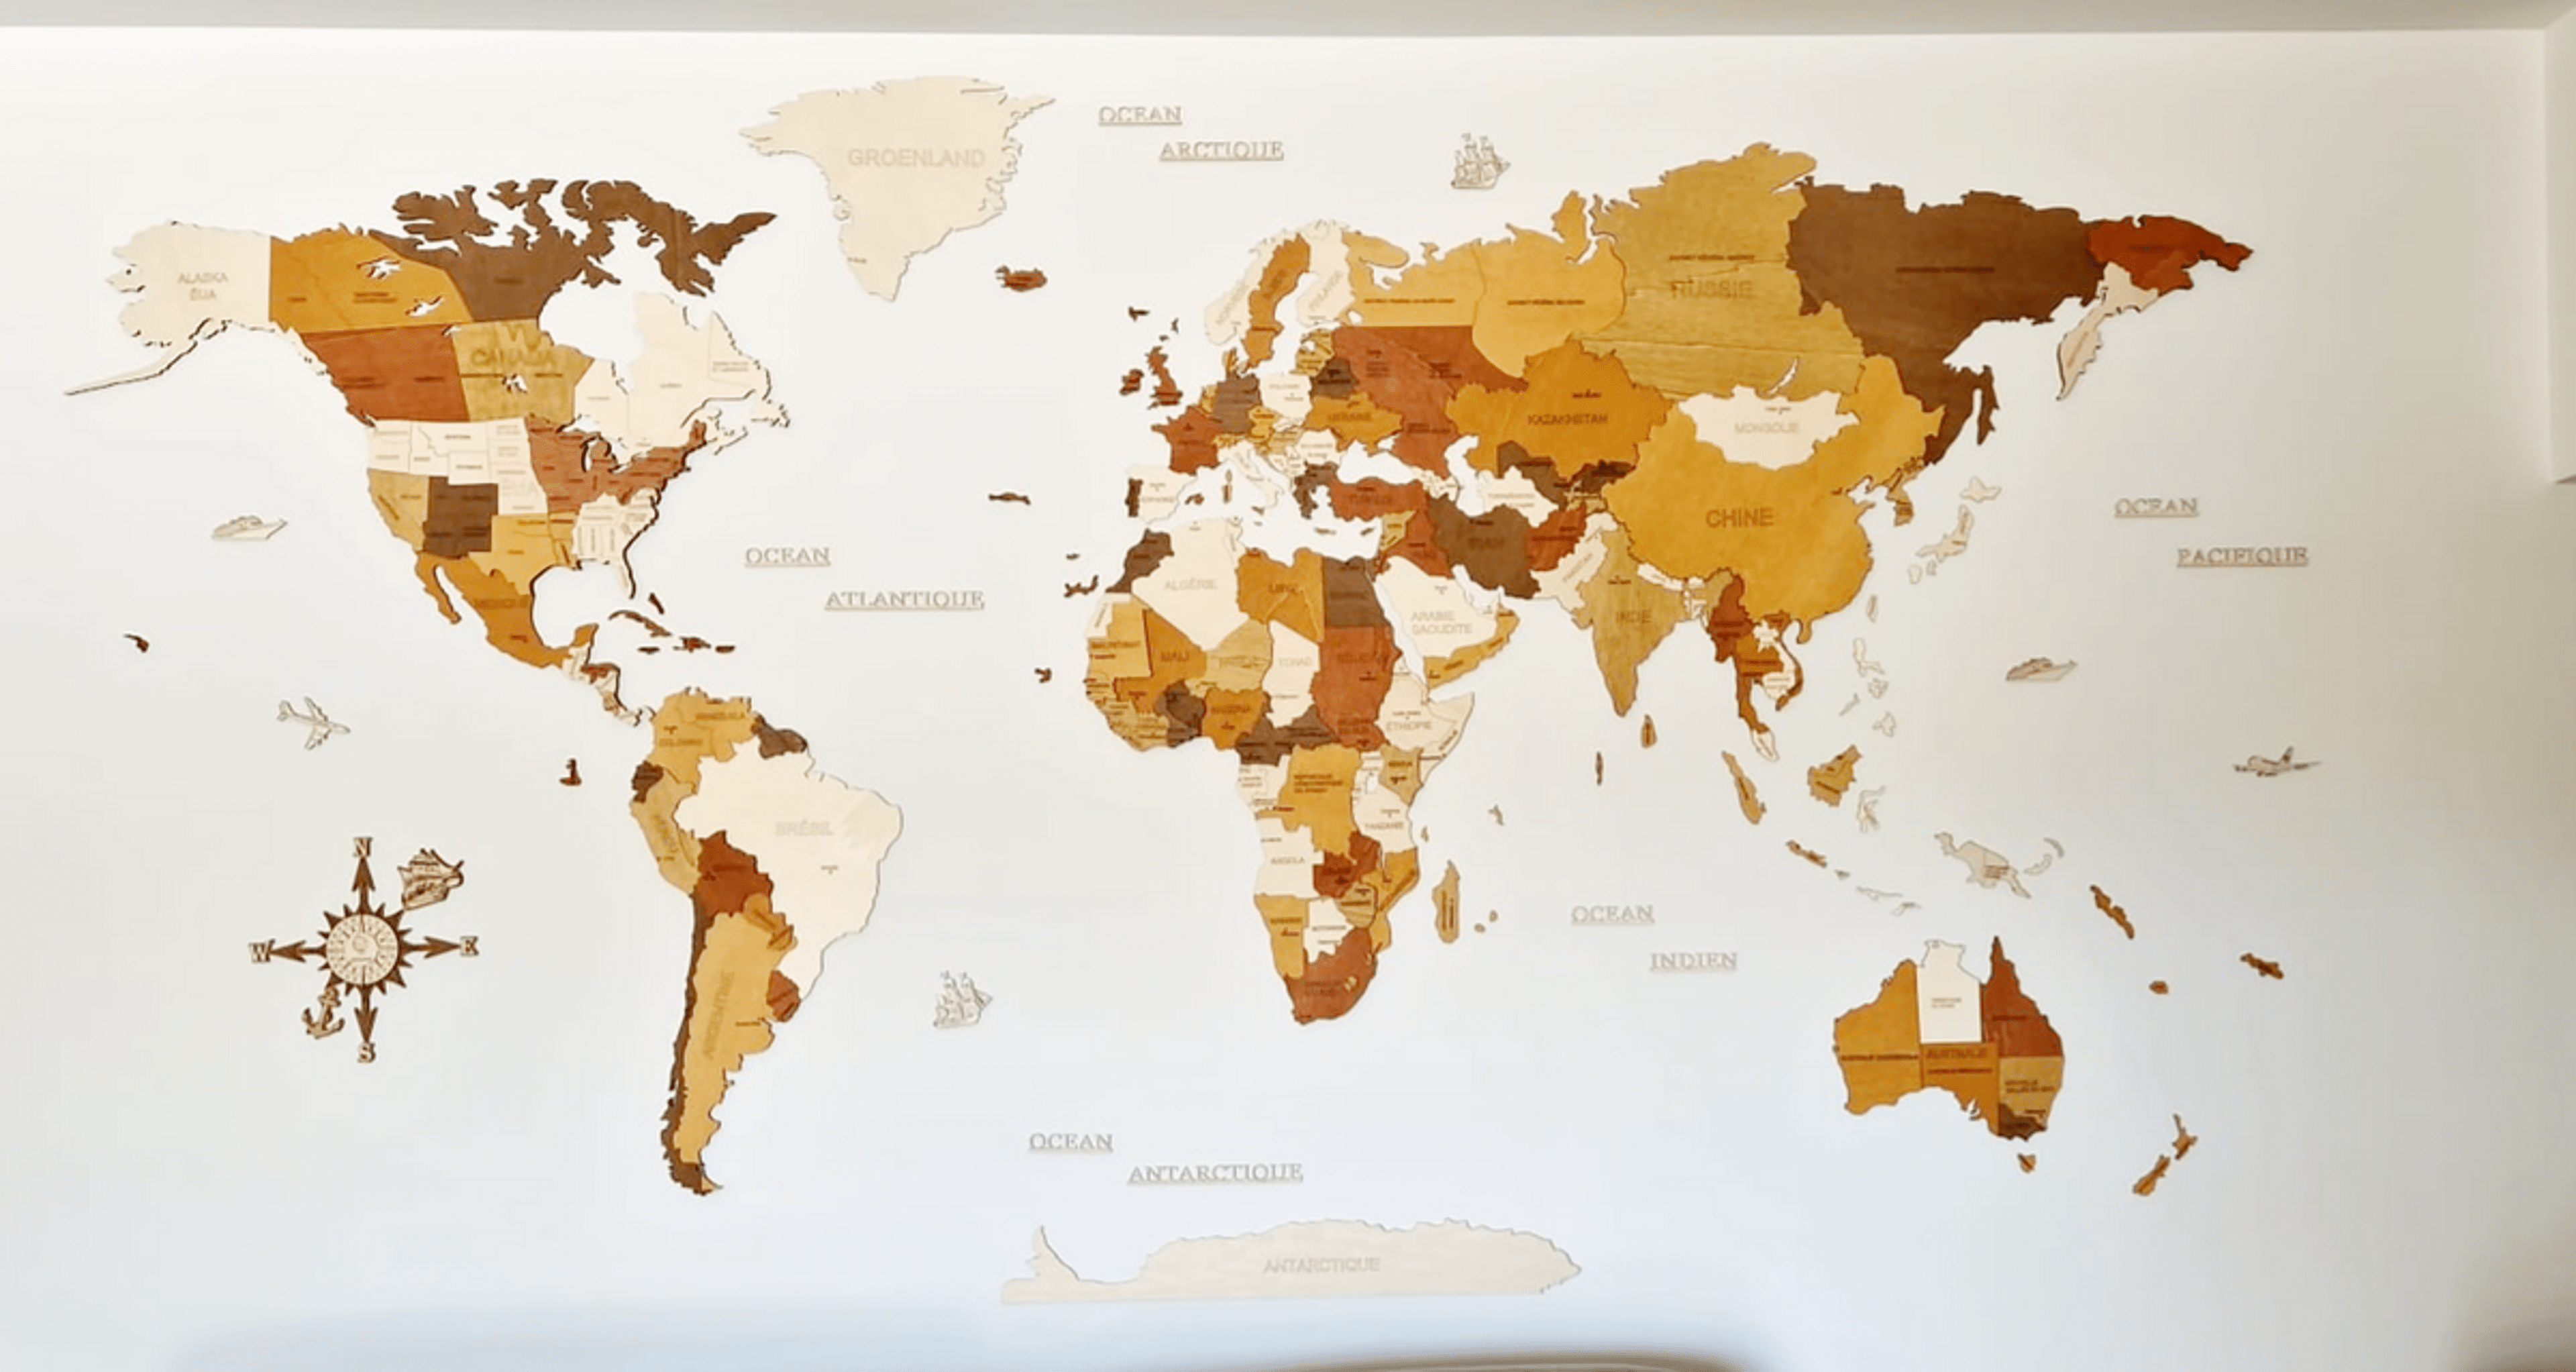 Reseña de Mapa del mundo de madera - imagen de Hakim M.